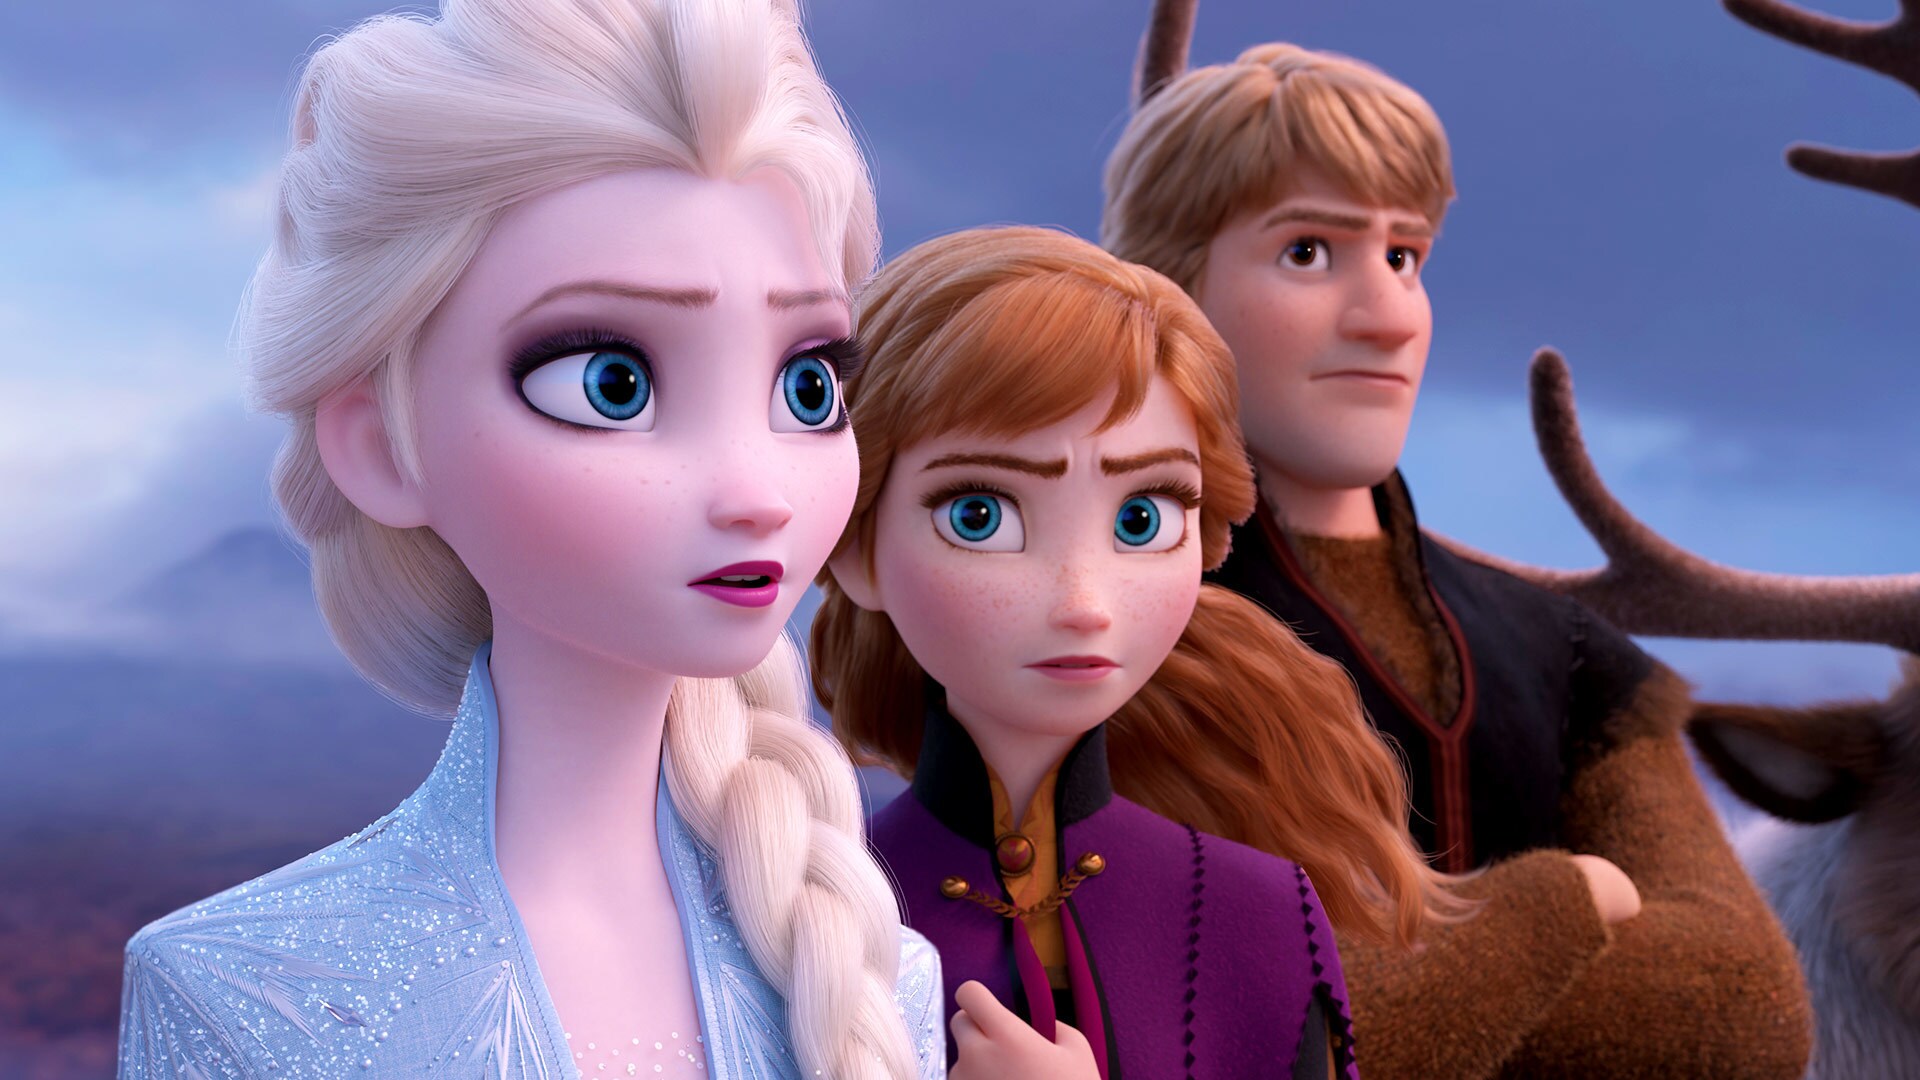 Disney Frozen Queen Elsa